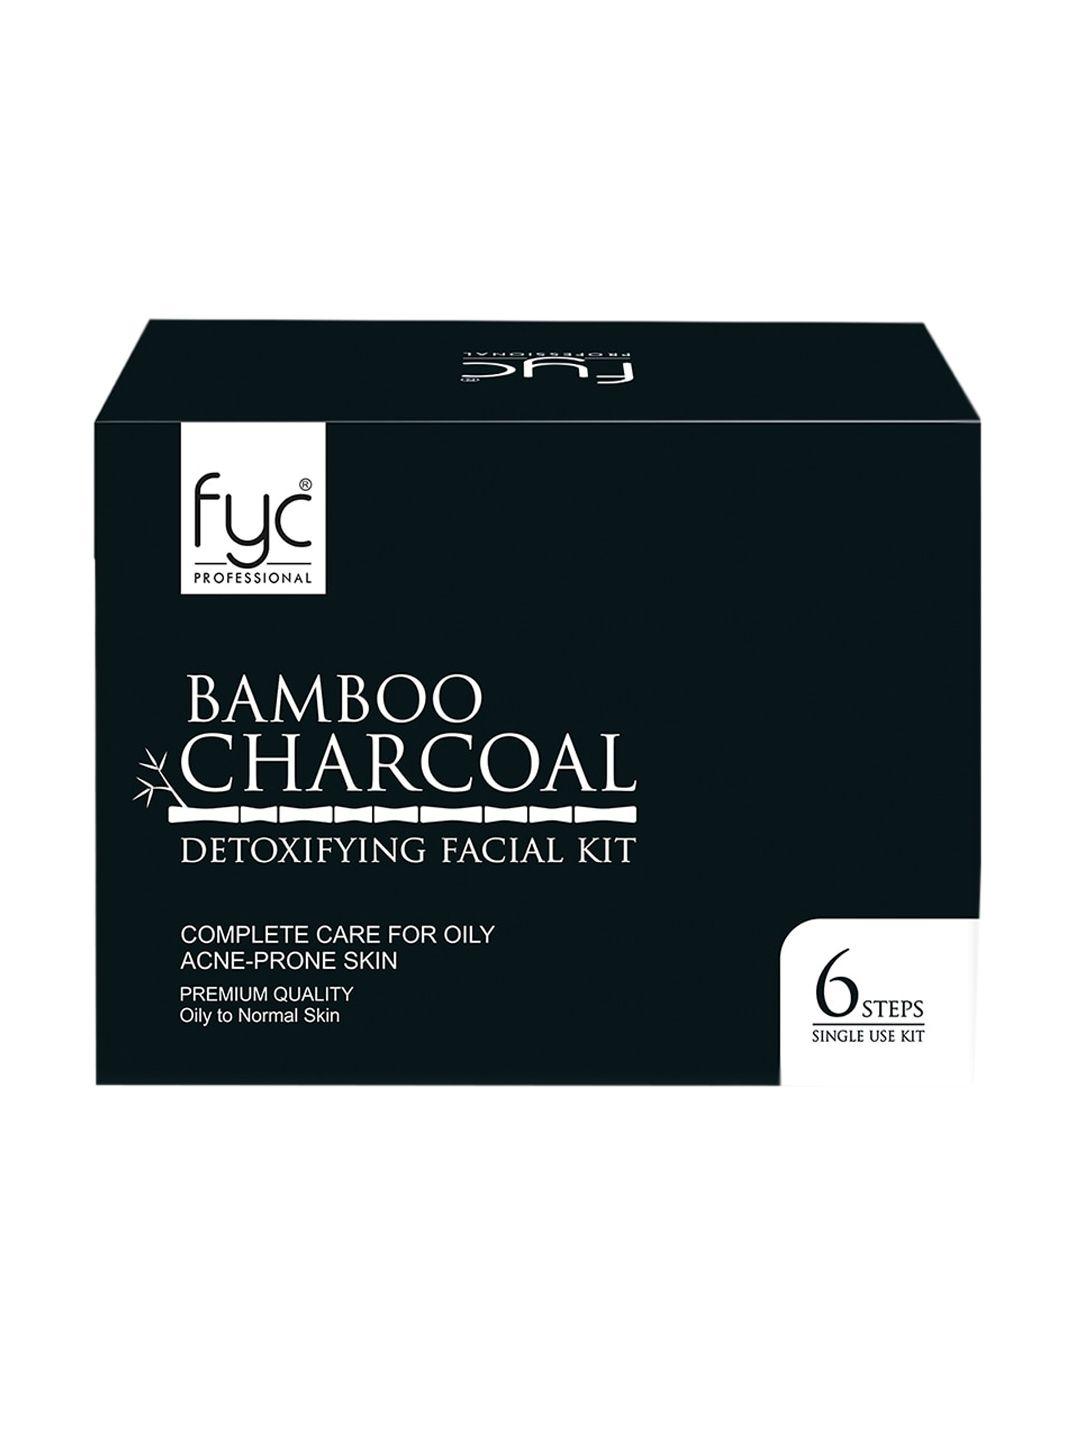 fyc professtional bamboo charcoal facial kit